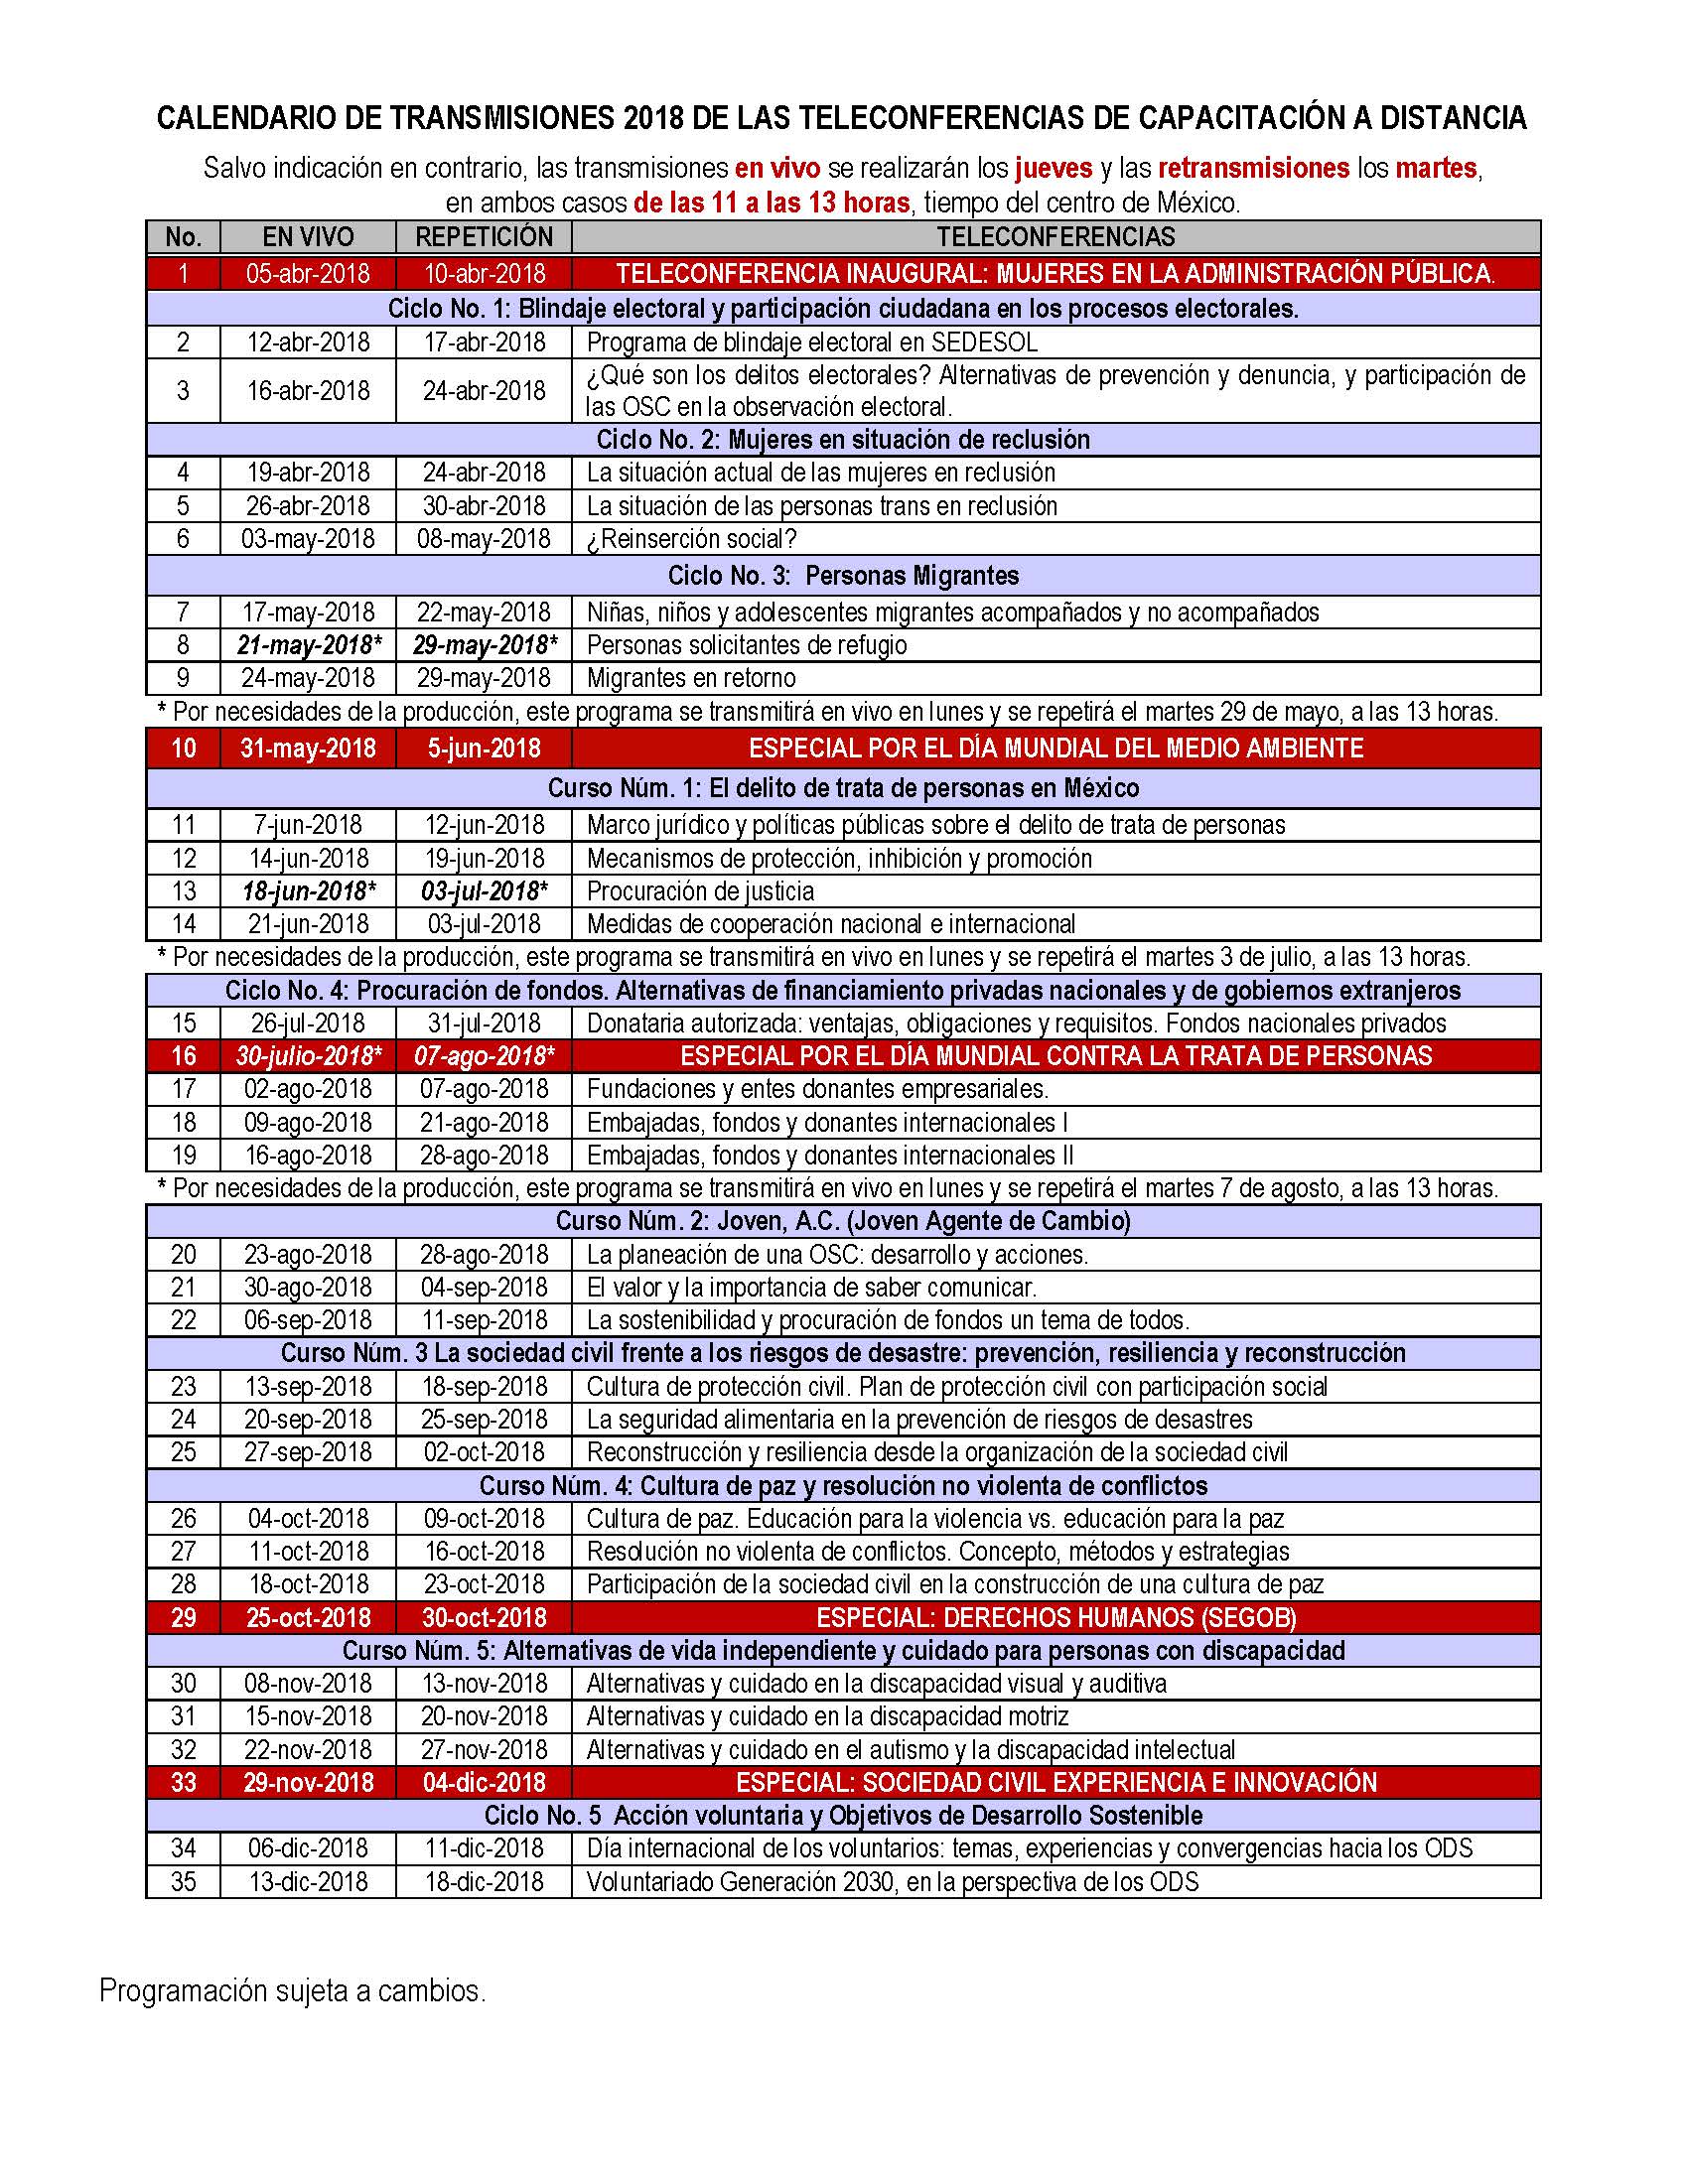 Calendario de transmisiones 2018 teleconferencias del Indesol